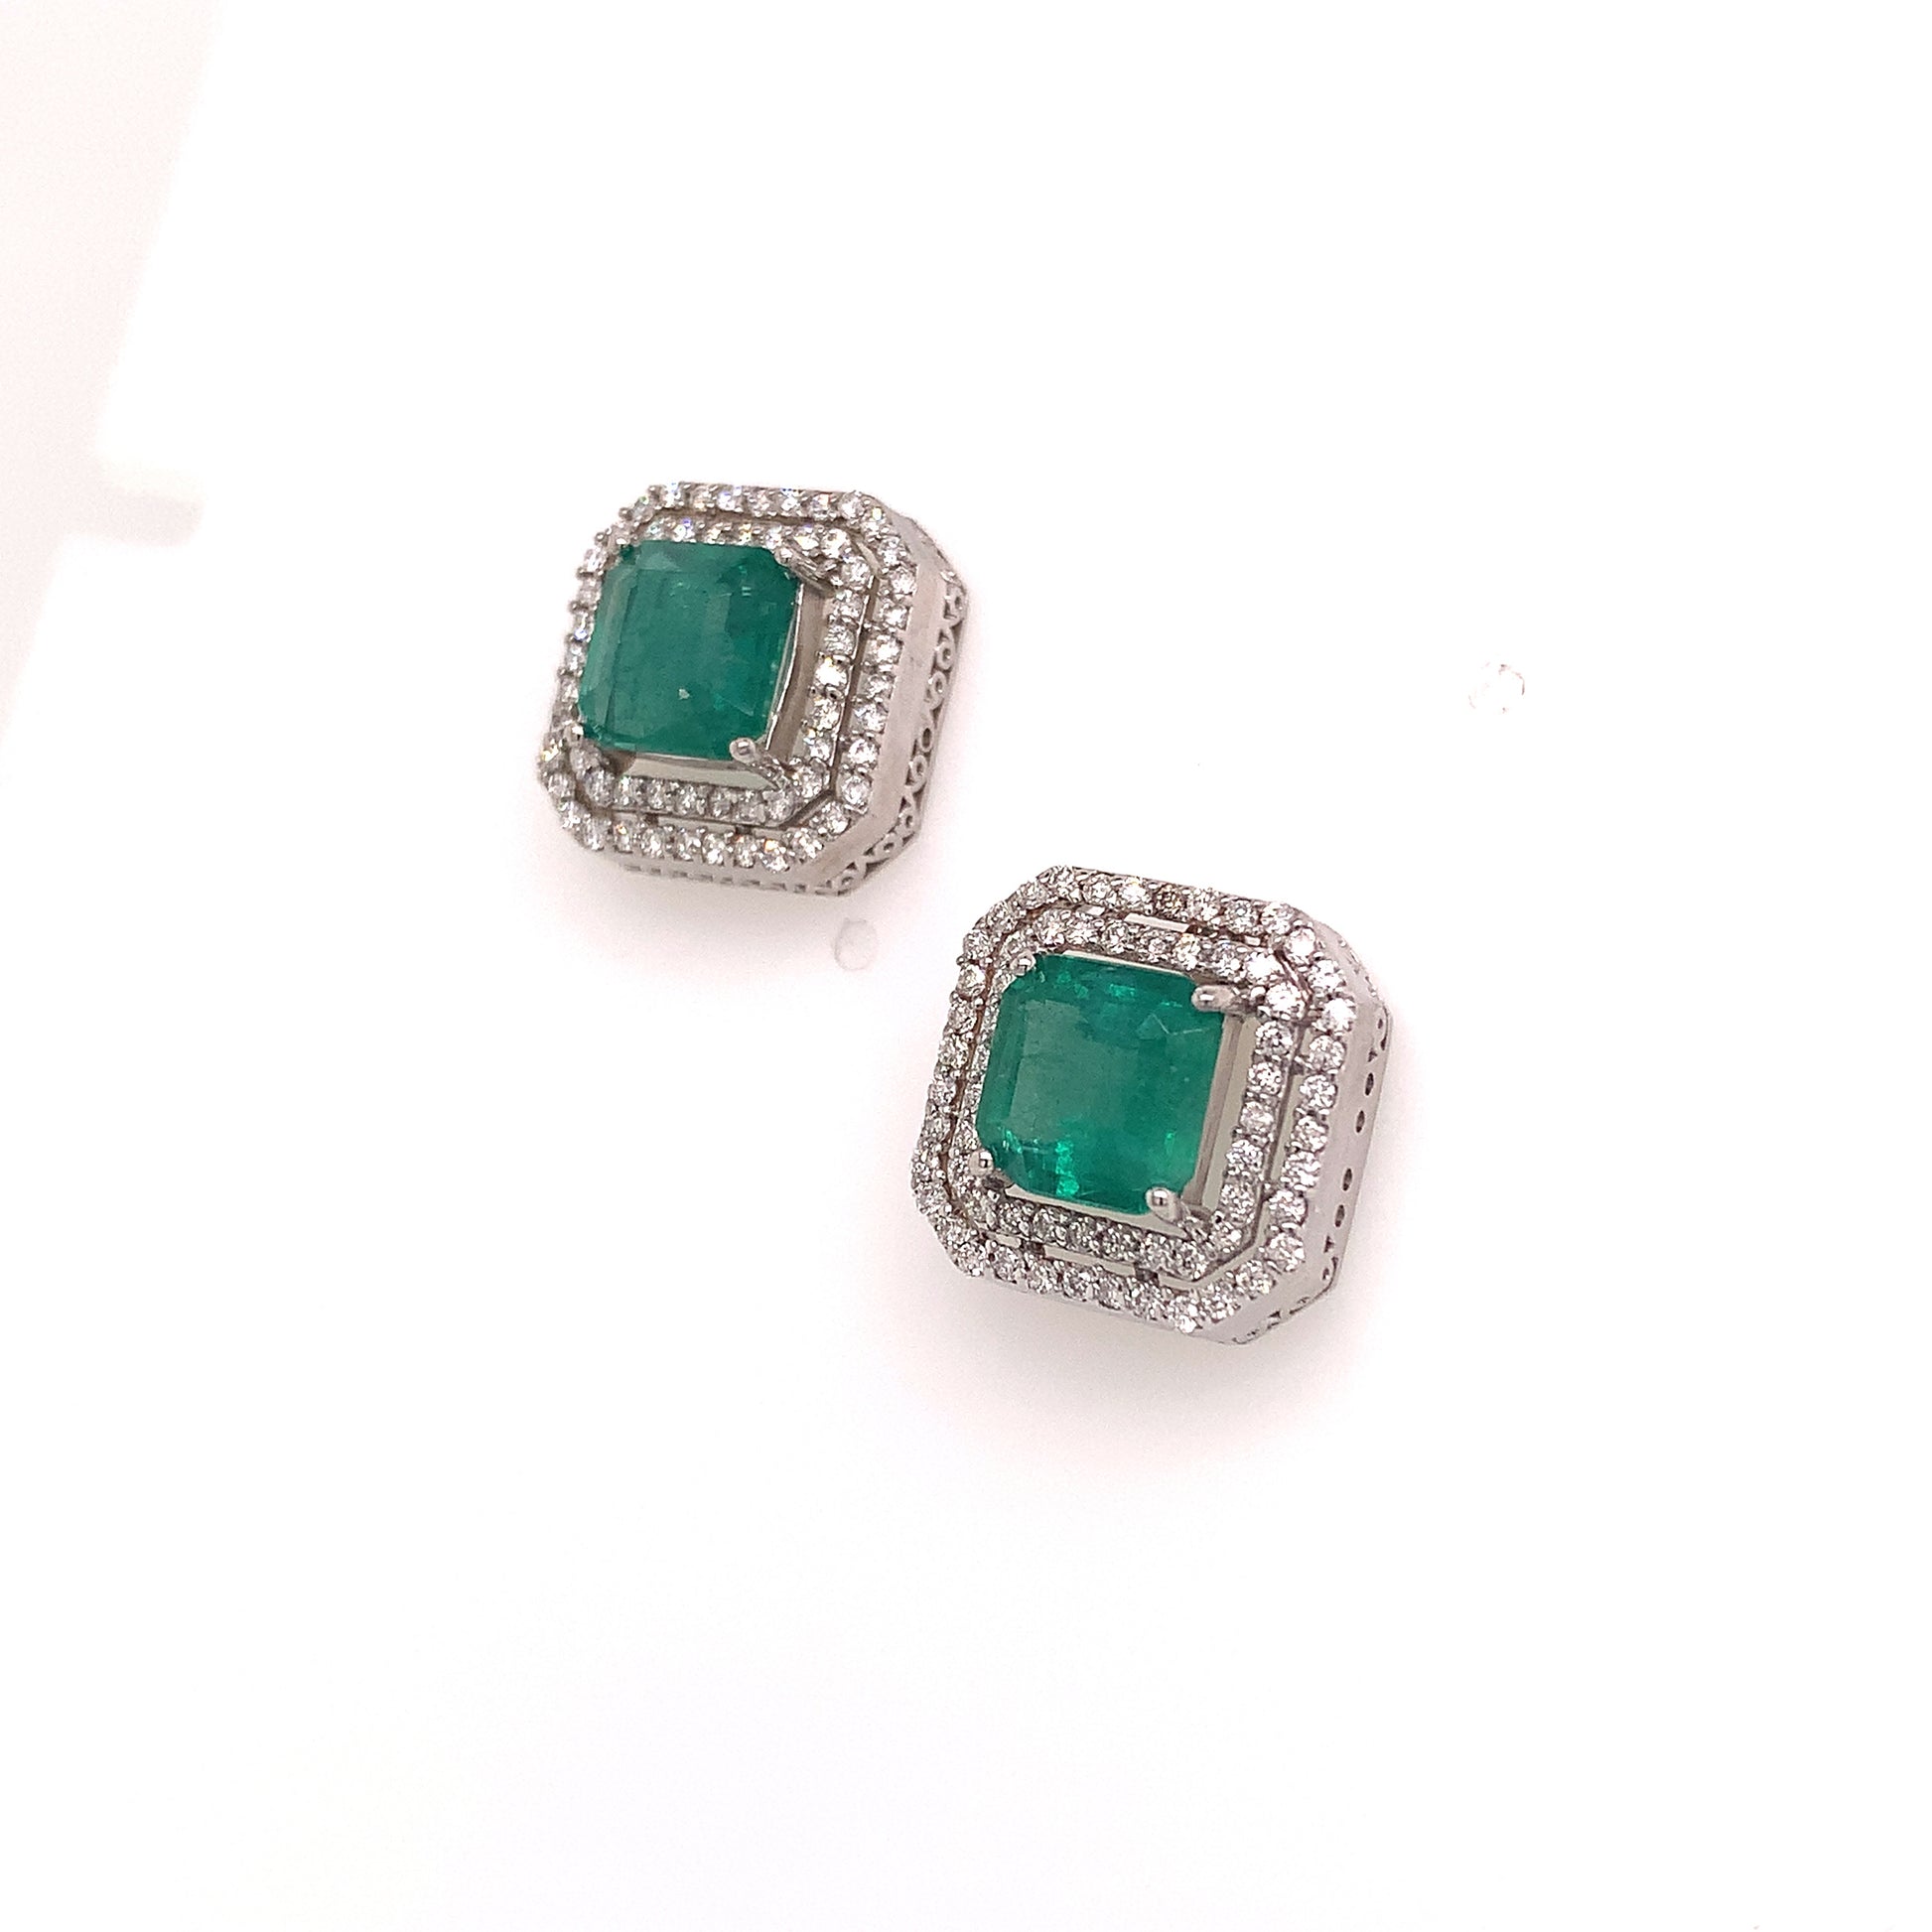 Natural Emerald Diamond Earrings 14k Gold 4.72 TCW Certified $8,950 113440 - Certified Fine Jewelry